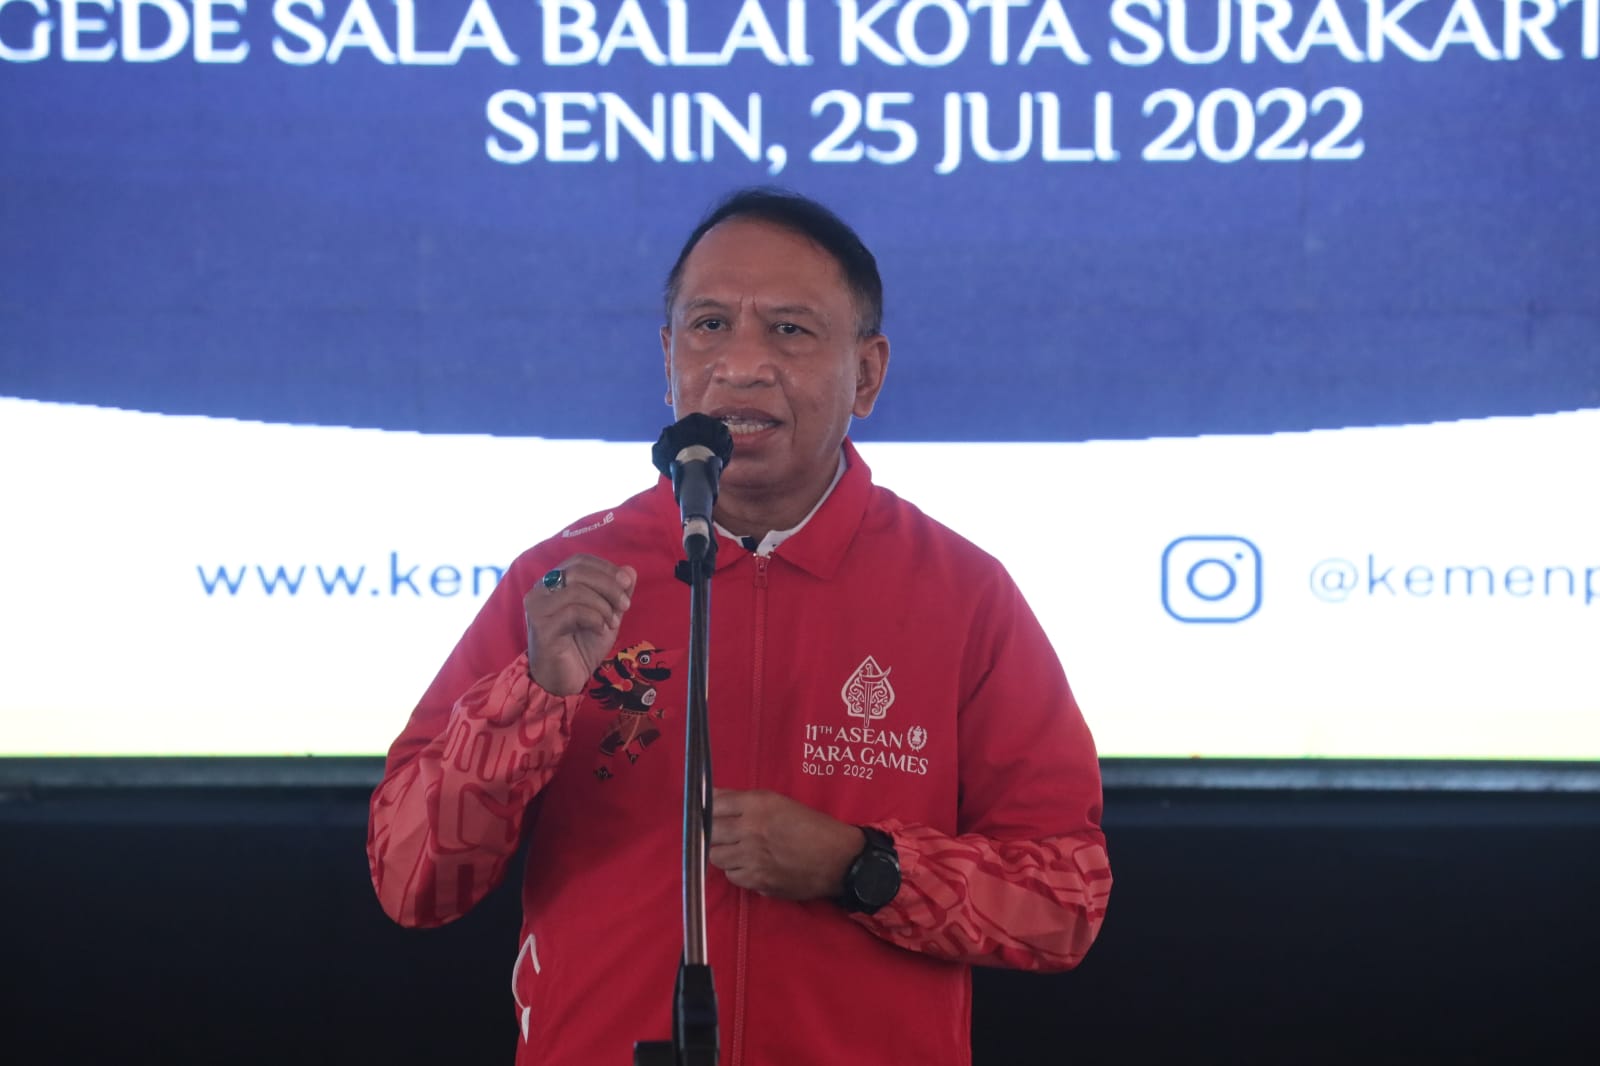 Menpora Amali Sampaikan Venue Asean Para Games Solo 2022 Sudah Siap Digunakan